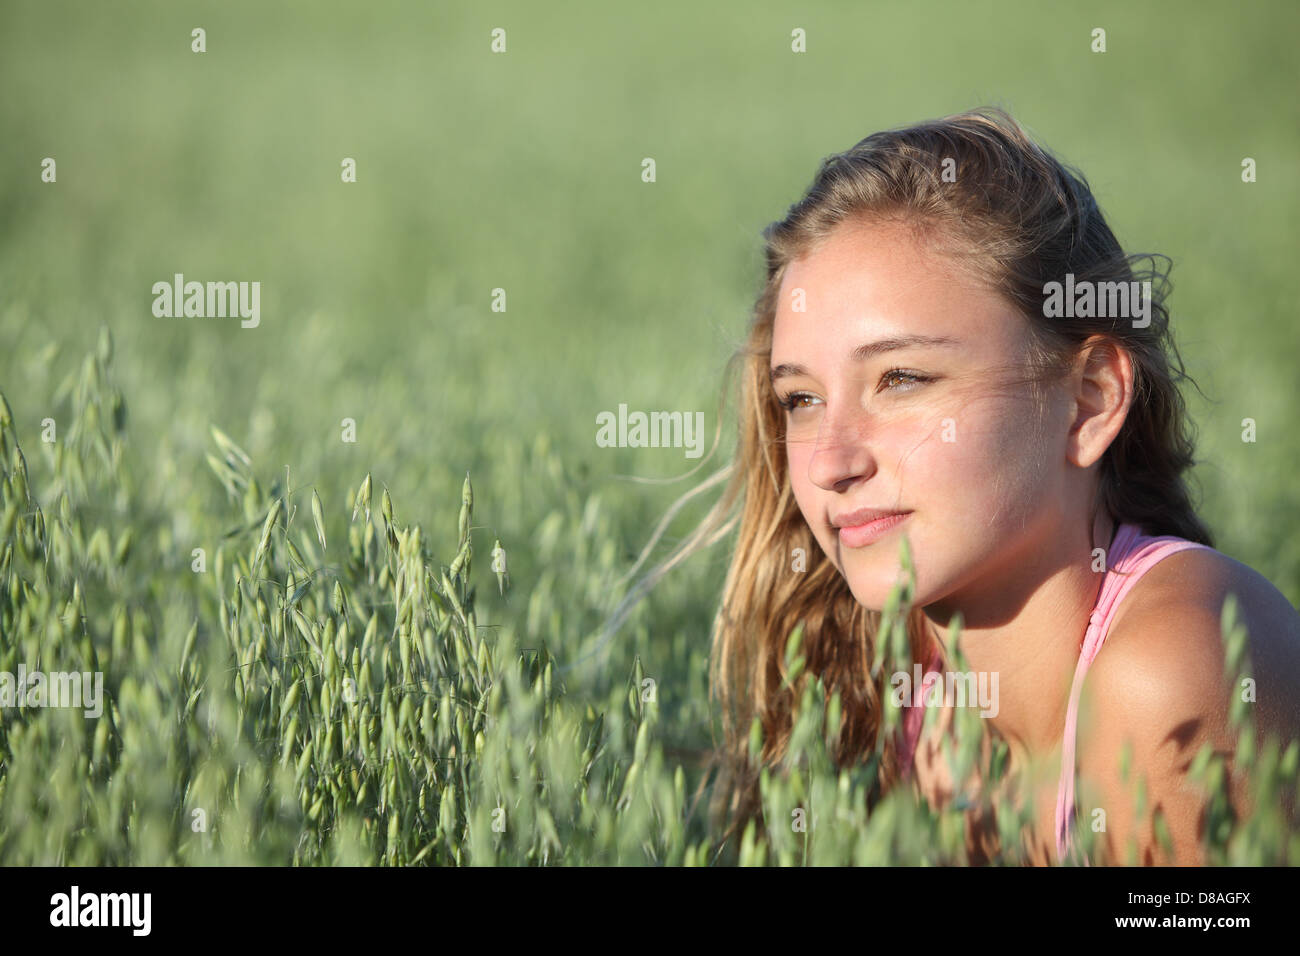 Ritratto di una bella ragazza adolescente faccia in un unfocused verde prato di avena Foto Stock